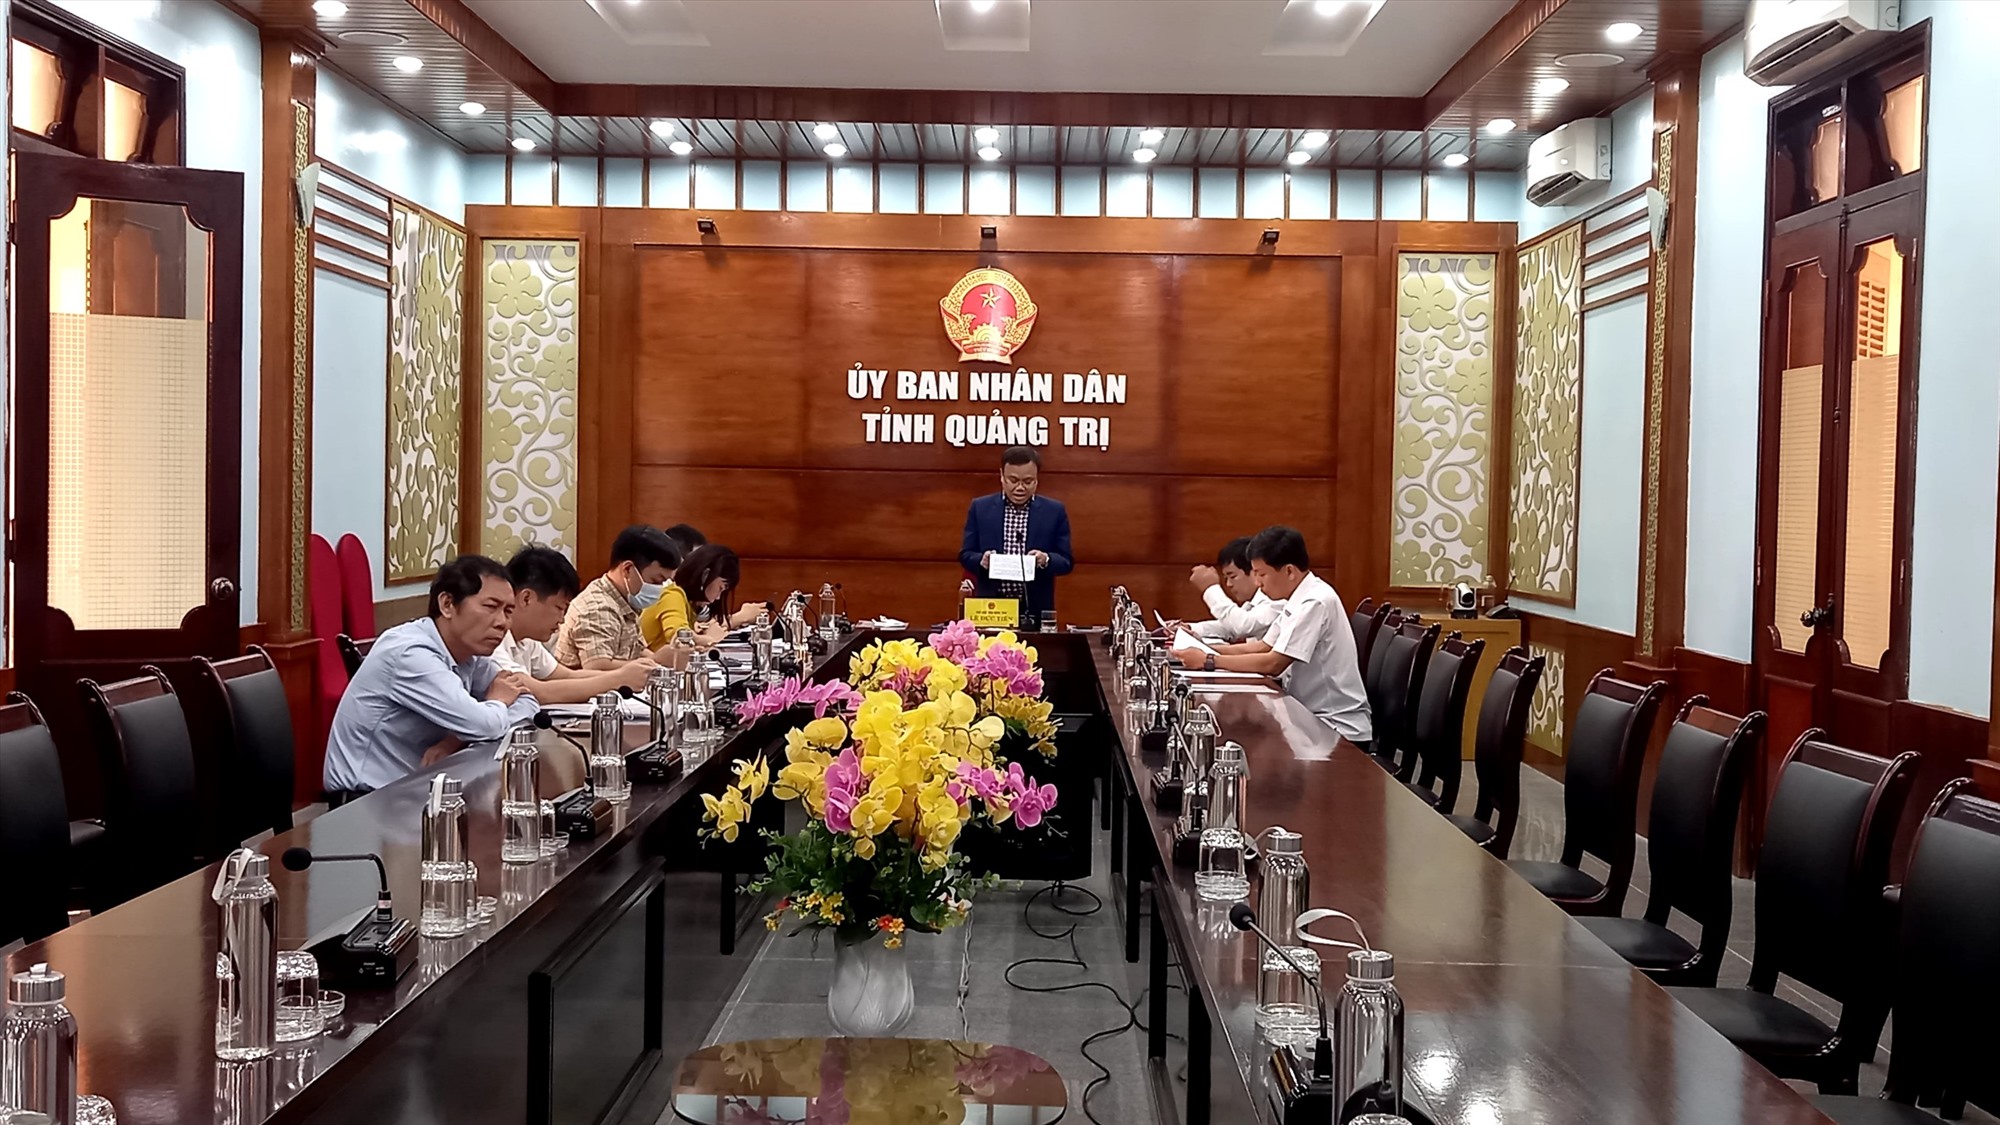 Phó Chủ tịch UBND tỉnh Lê Đức Tiến tham gia ý kiến tại điểm cầu Quảng Trị - Ảnh: T.T